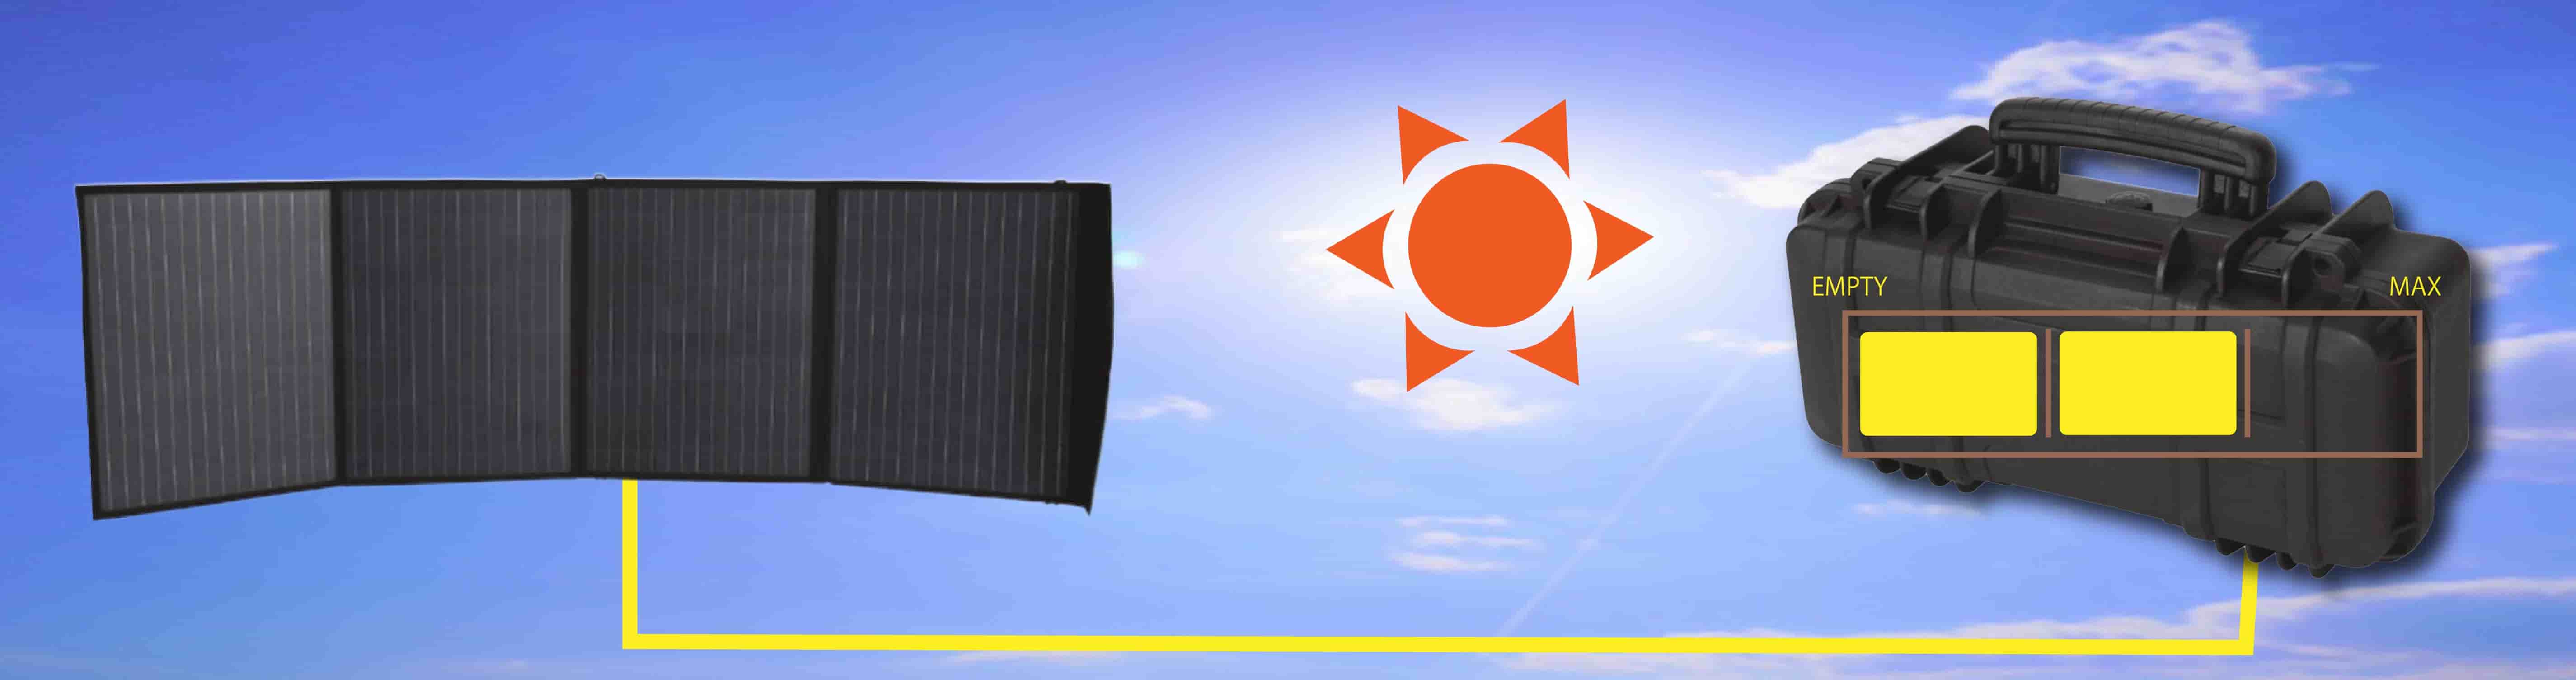 万が一の停電時にも、ソーラーパネルがあれば、太陽光発電によって蓄電池本体の充電ができます